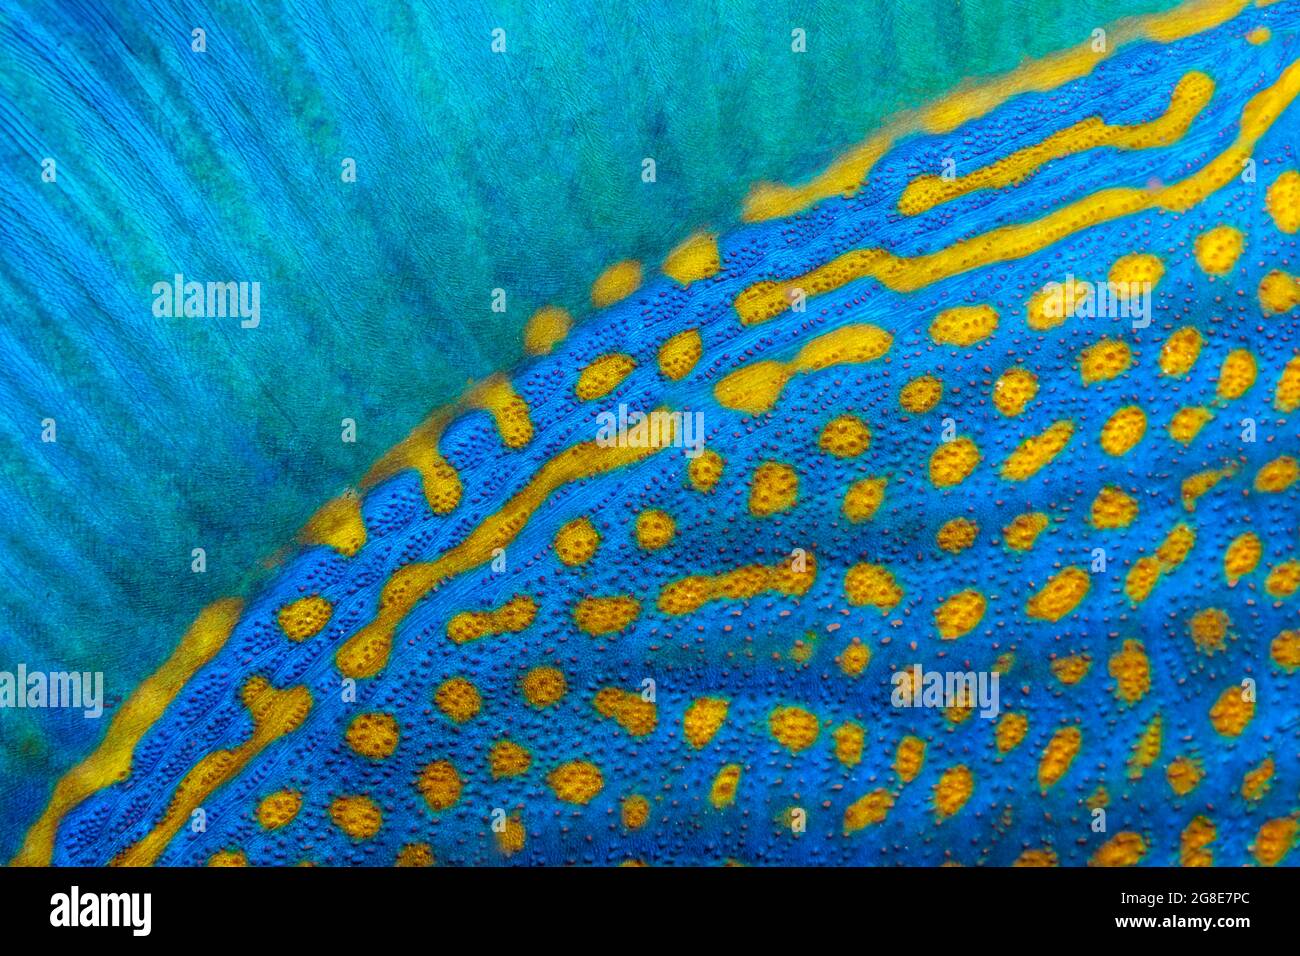 Pinna dorsale e scale di triggerfish a striscia blu (Pseudobalistes fuscus), dettaglio, Mar Rosso, Fury Shoals, Egitto Foto Stock